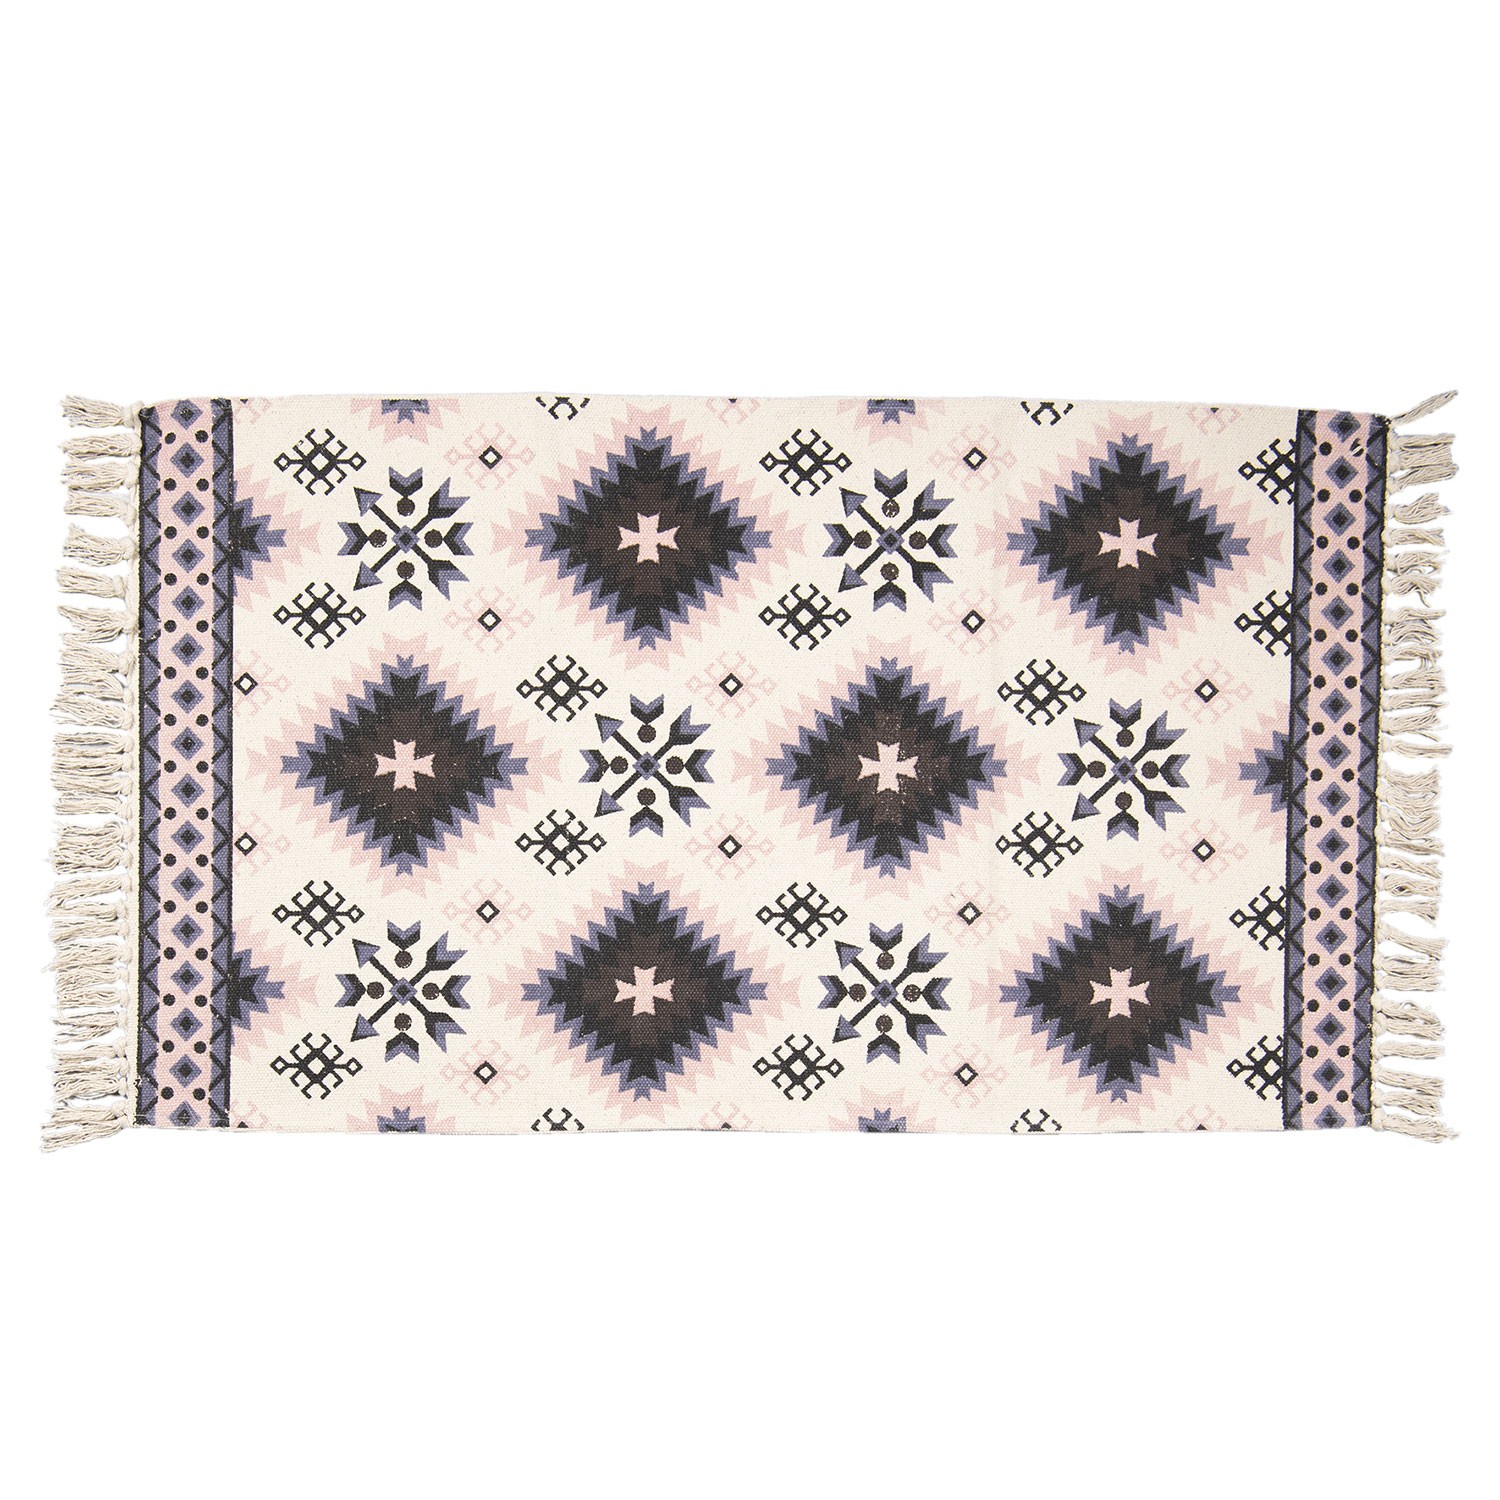 Bavlněný koberec s barevnými ornamenty a třásněmi - 70*120 cm Clayre & Eef